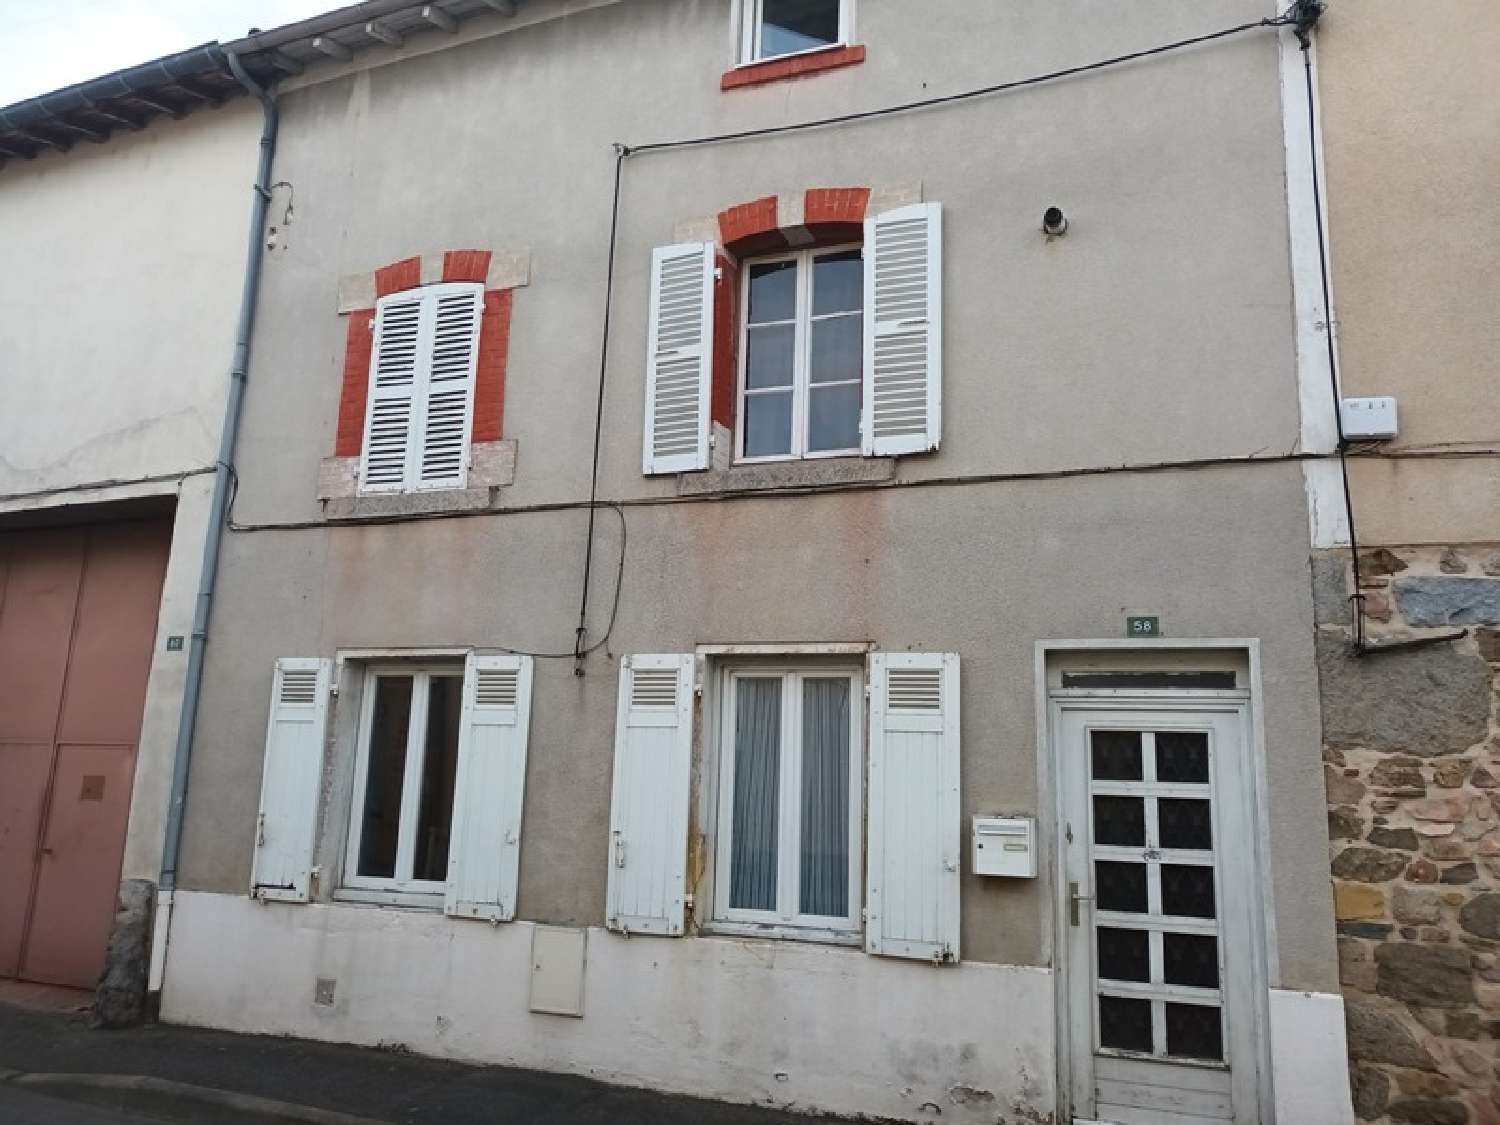  à vendre maison de village Panissières Loire 1